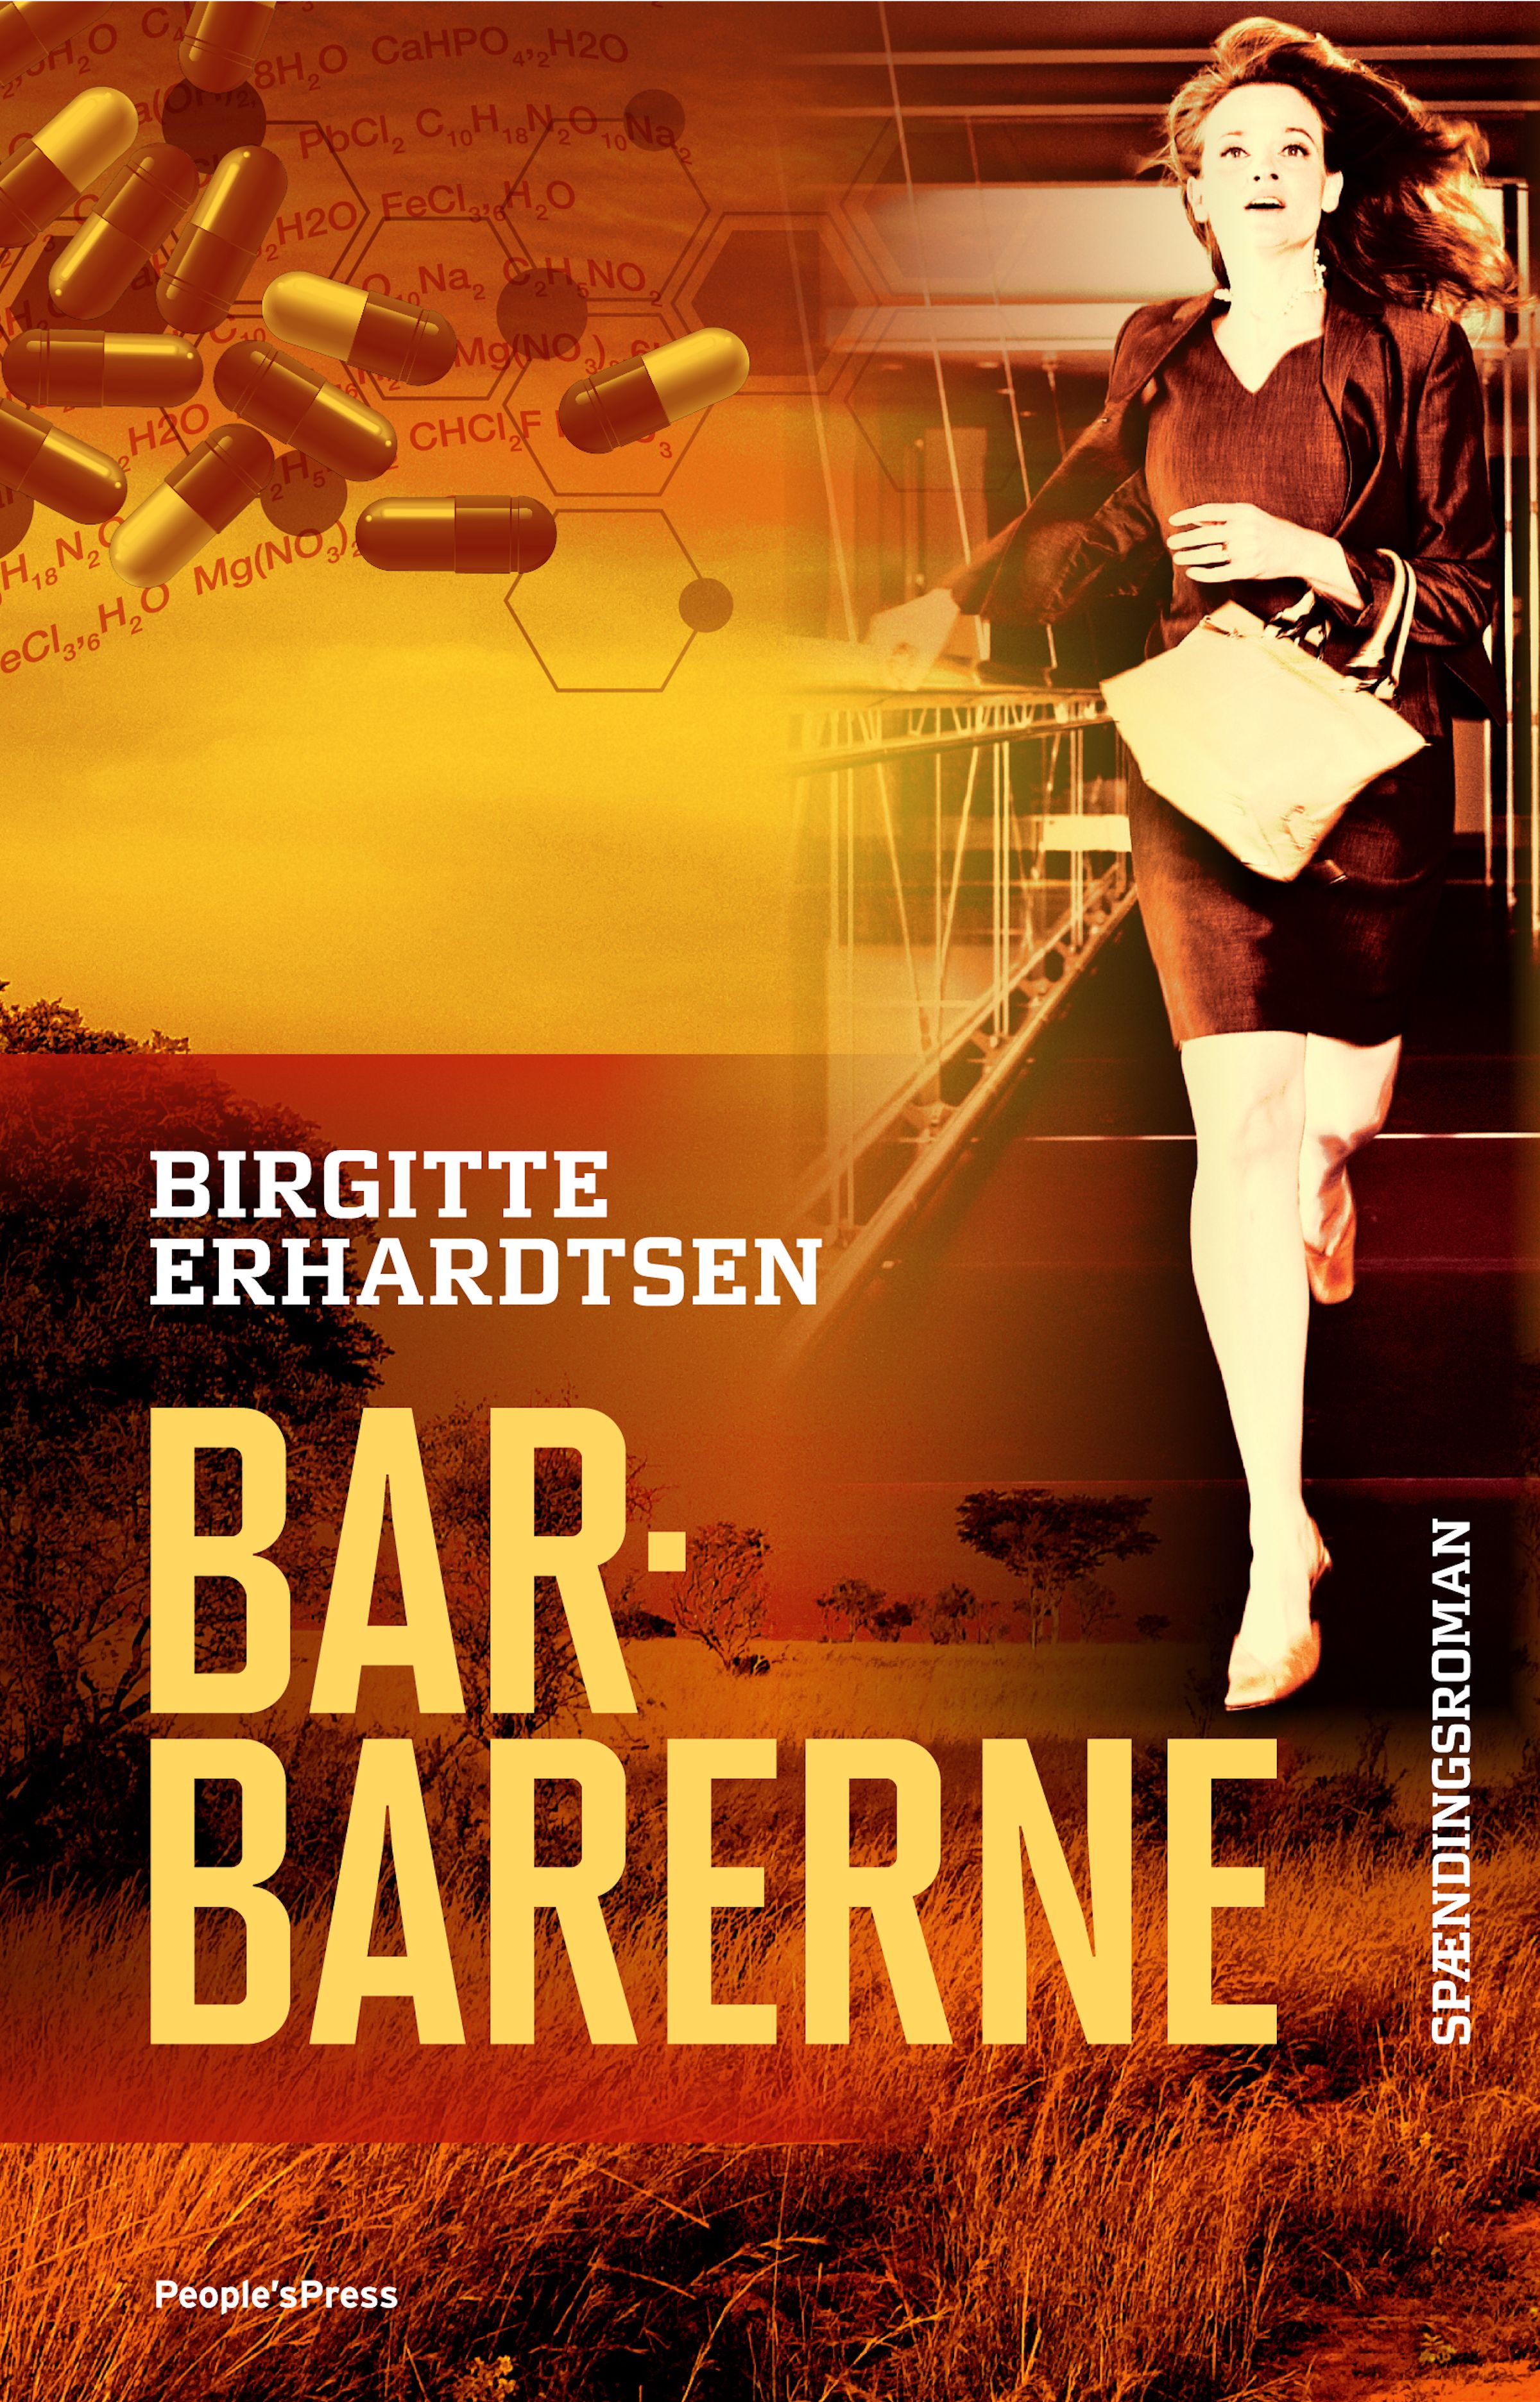 Barbarerne, e-bog af Birgitte Erhardtsen